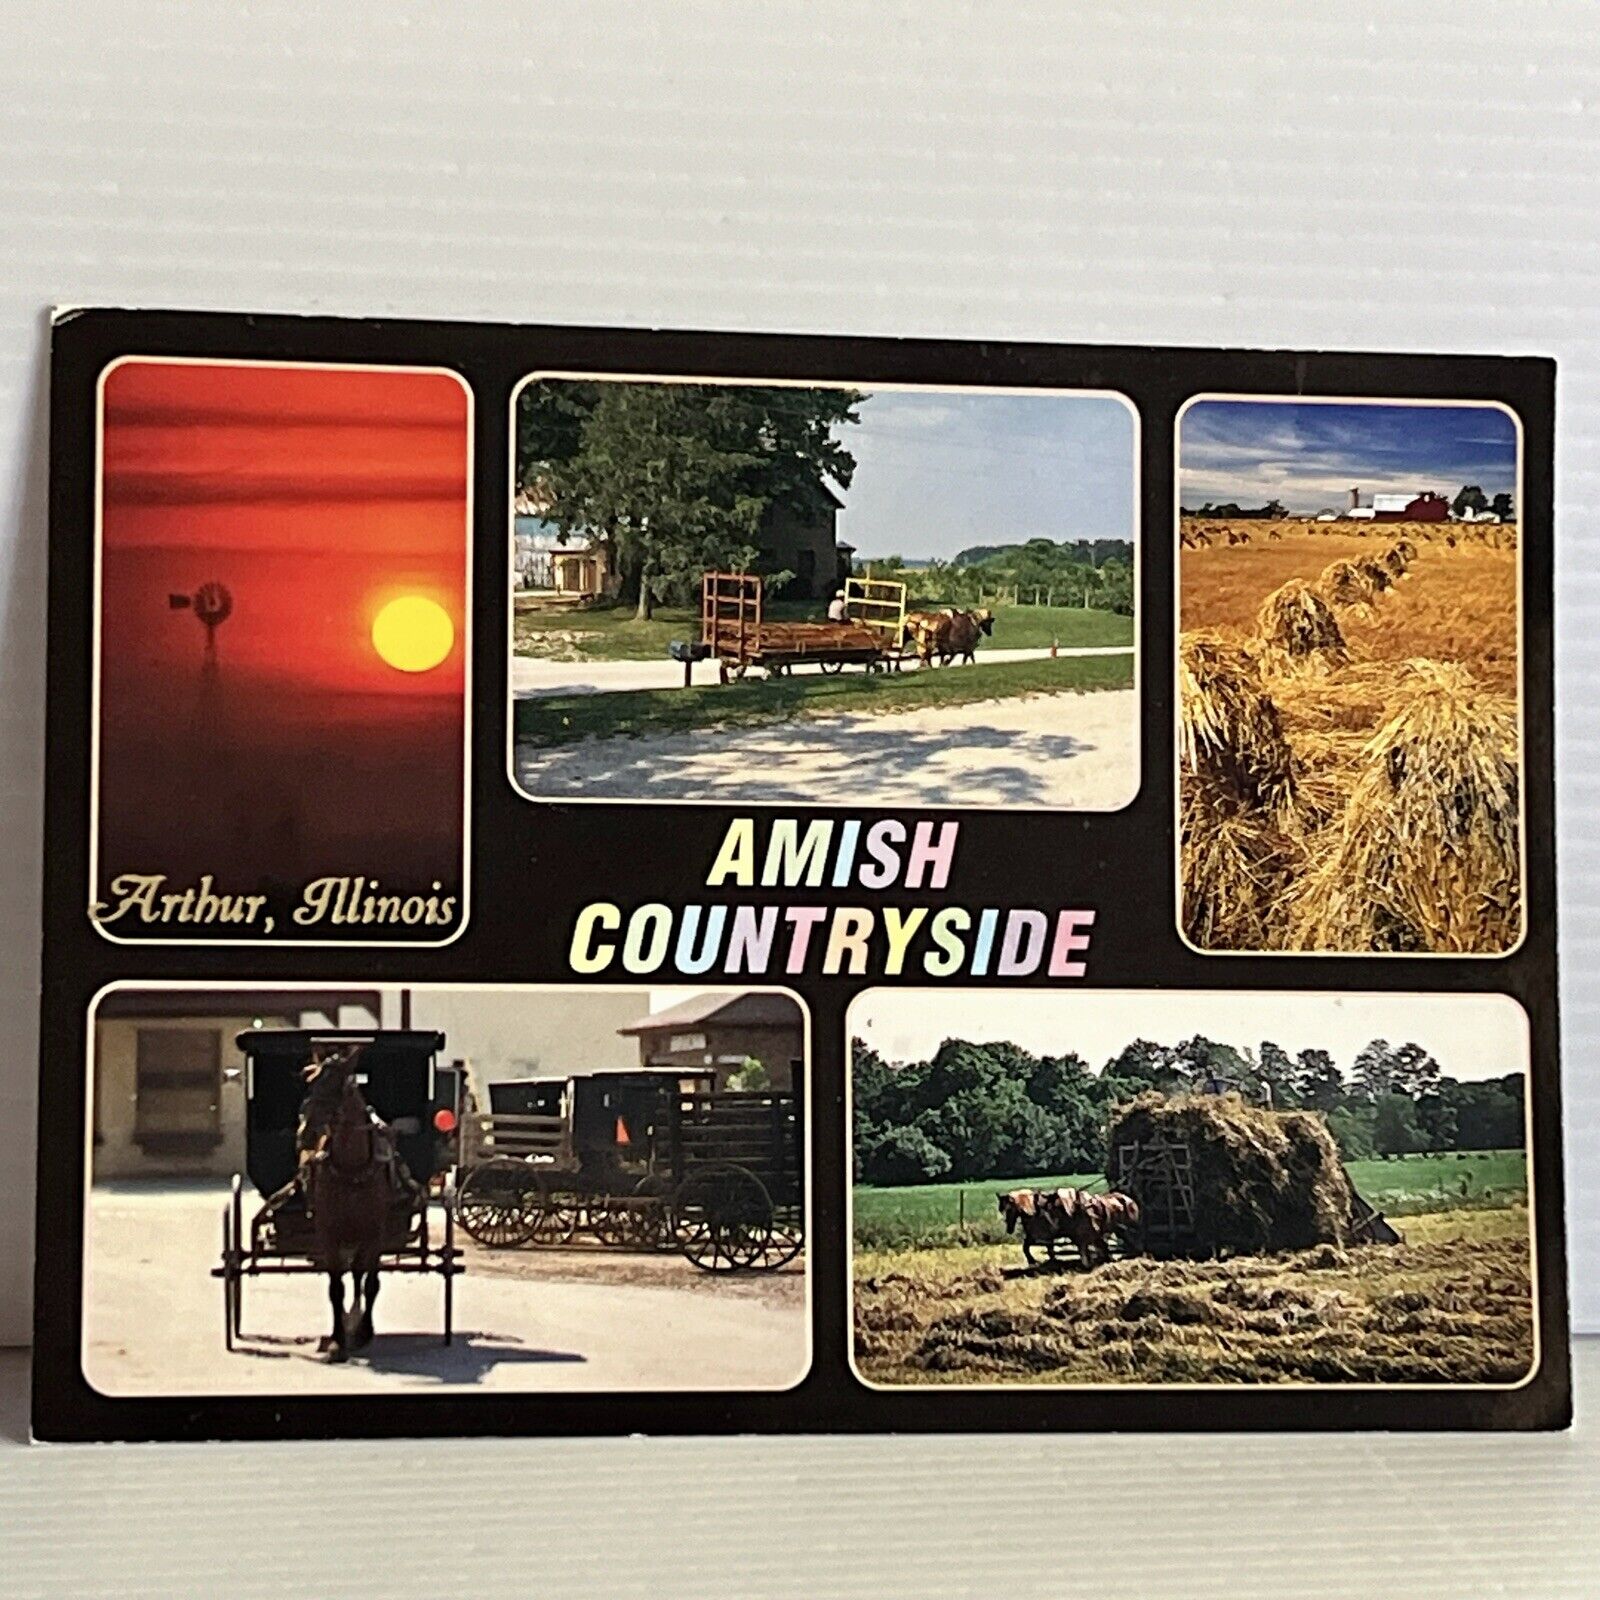 Amish Countryside, 5 Views of Amish Way of Life